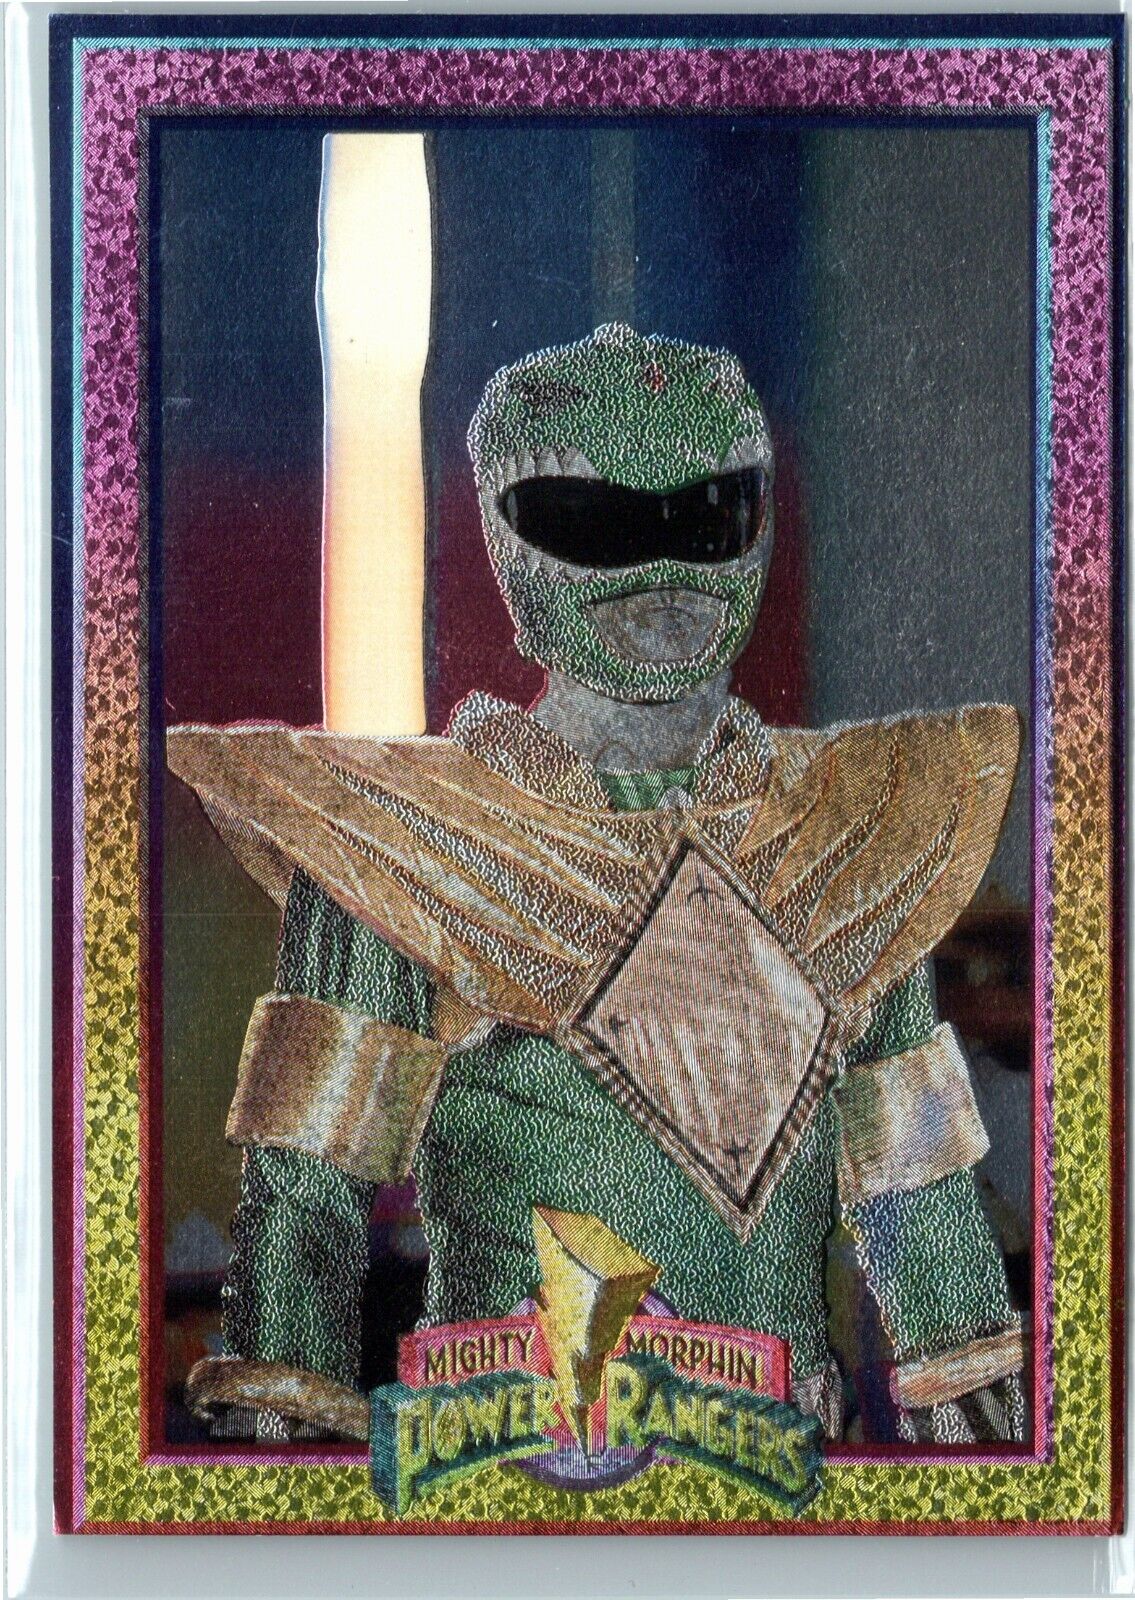 1994 Power Rangers Series 1 #37 The Green Ranger Power Foil